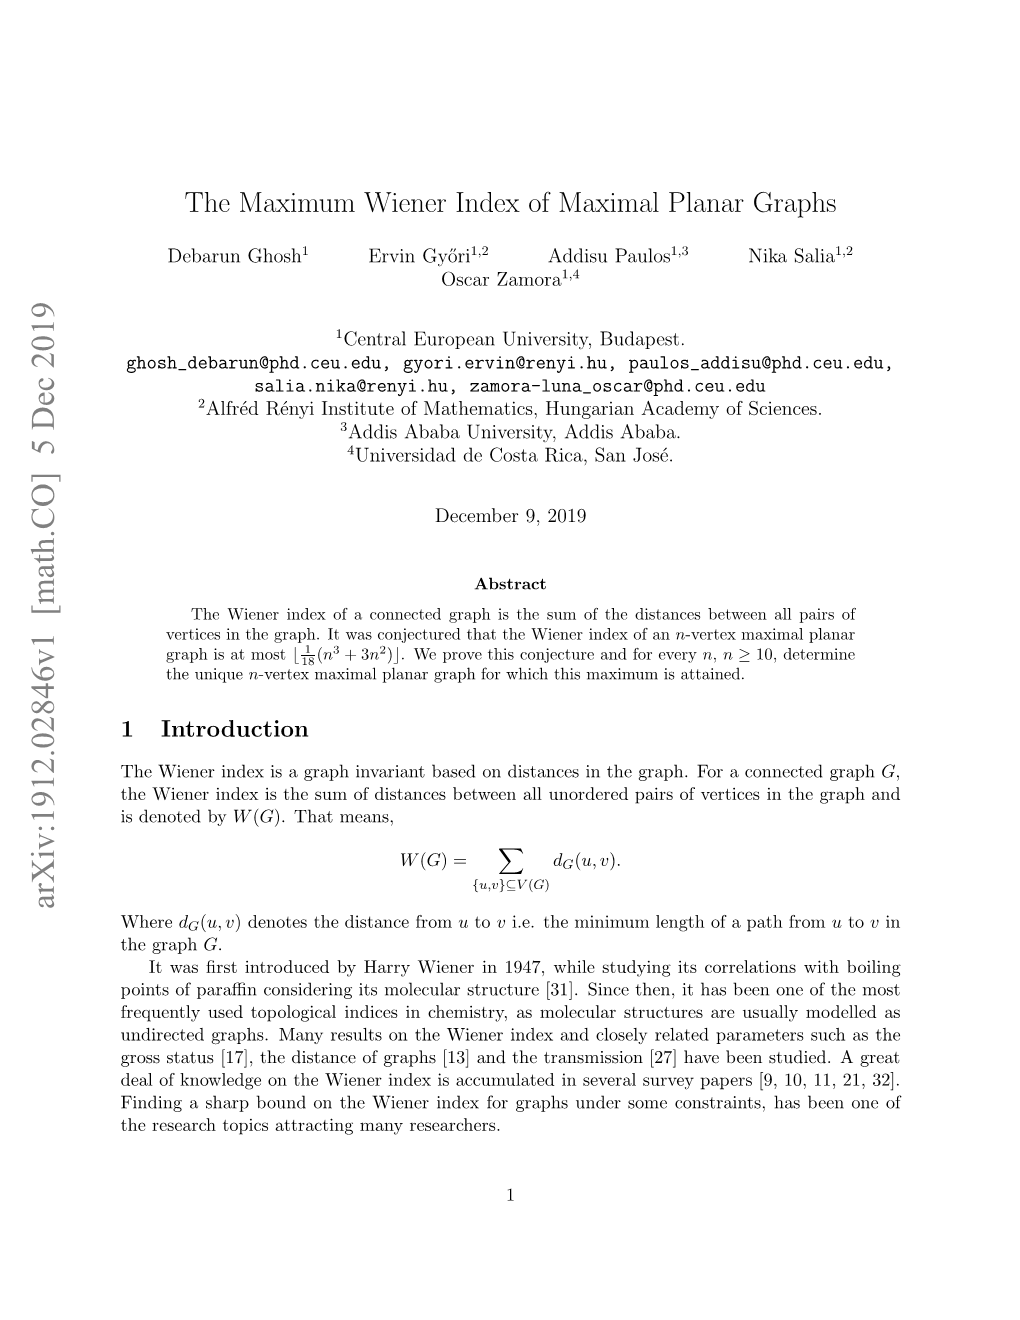 The Maximum Wiener Index of Maximal Planar Graphs